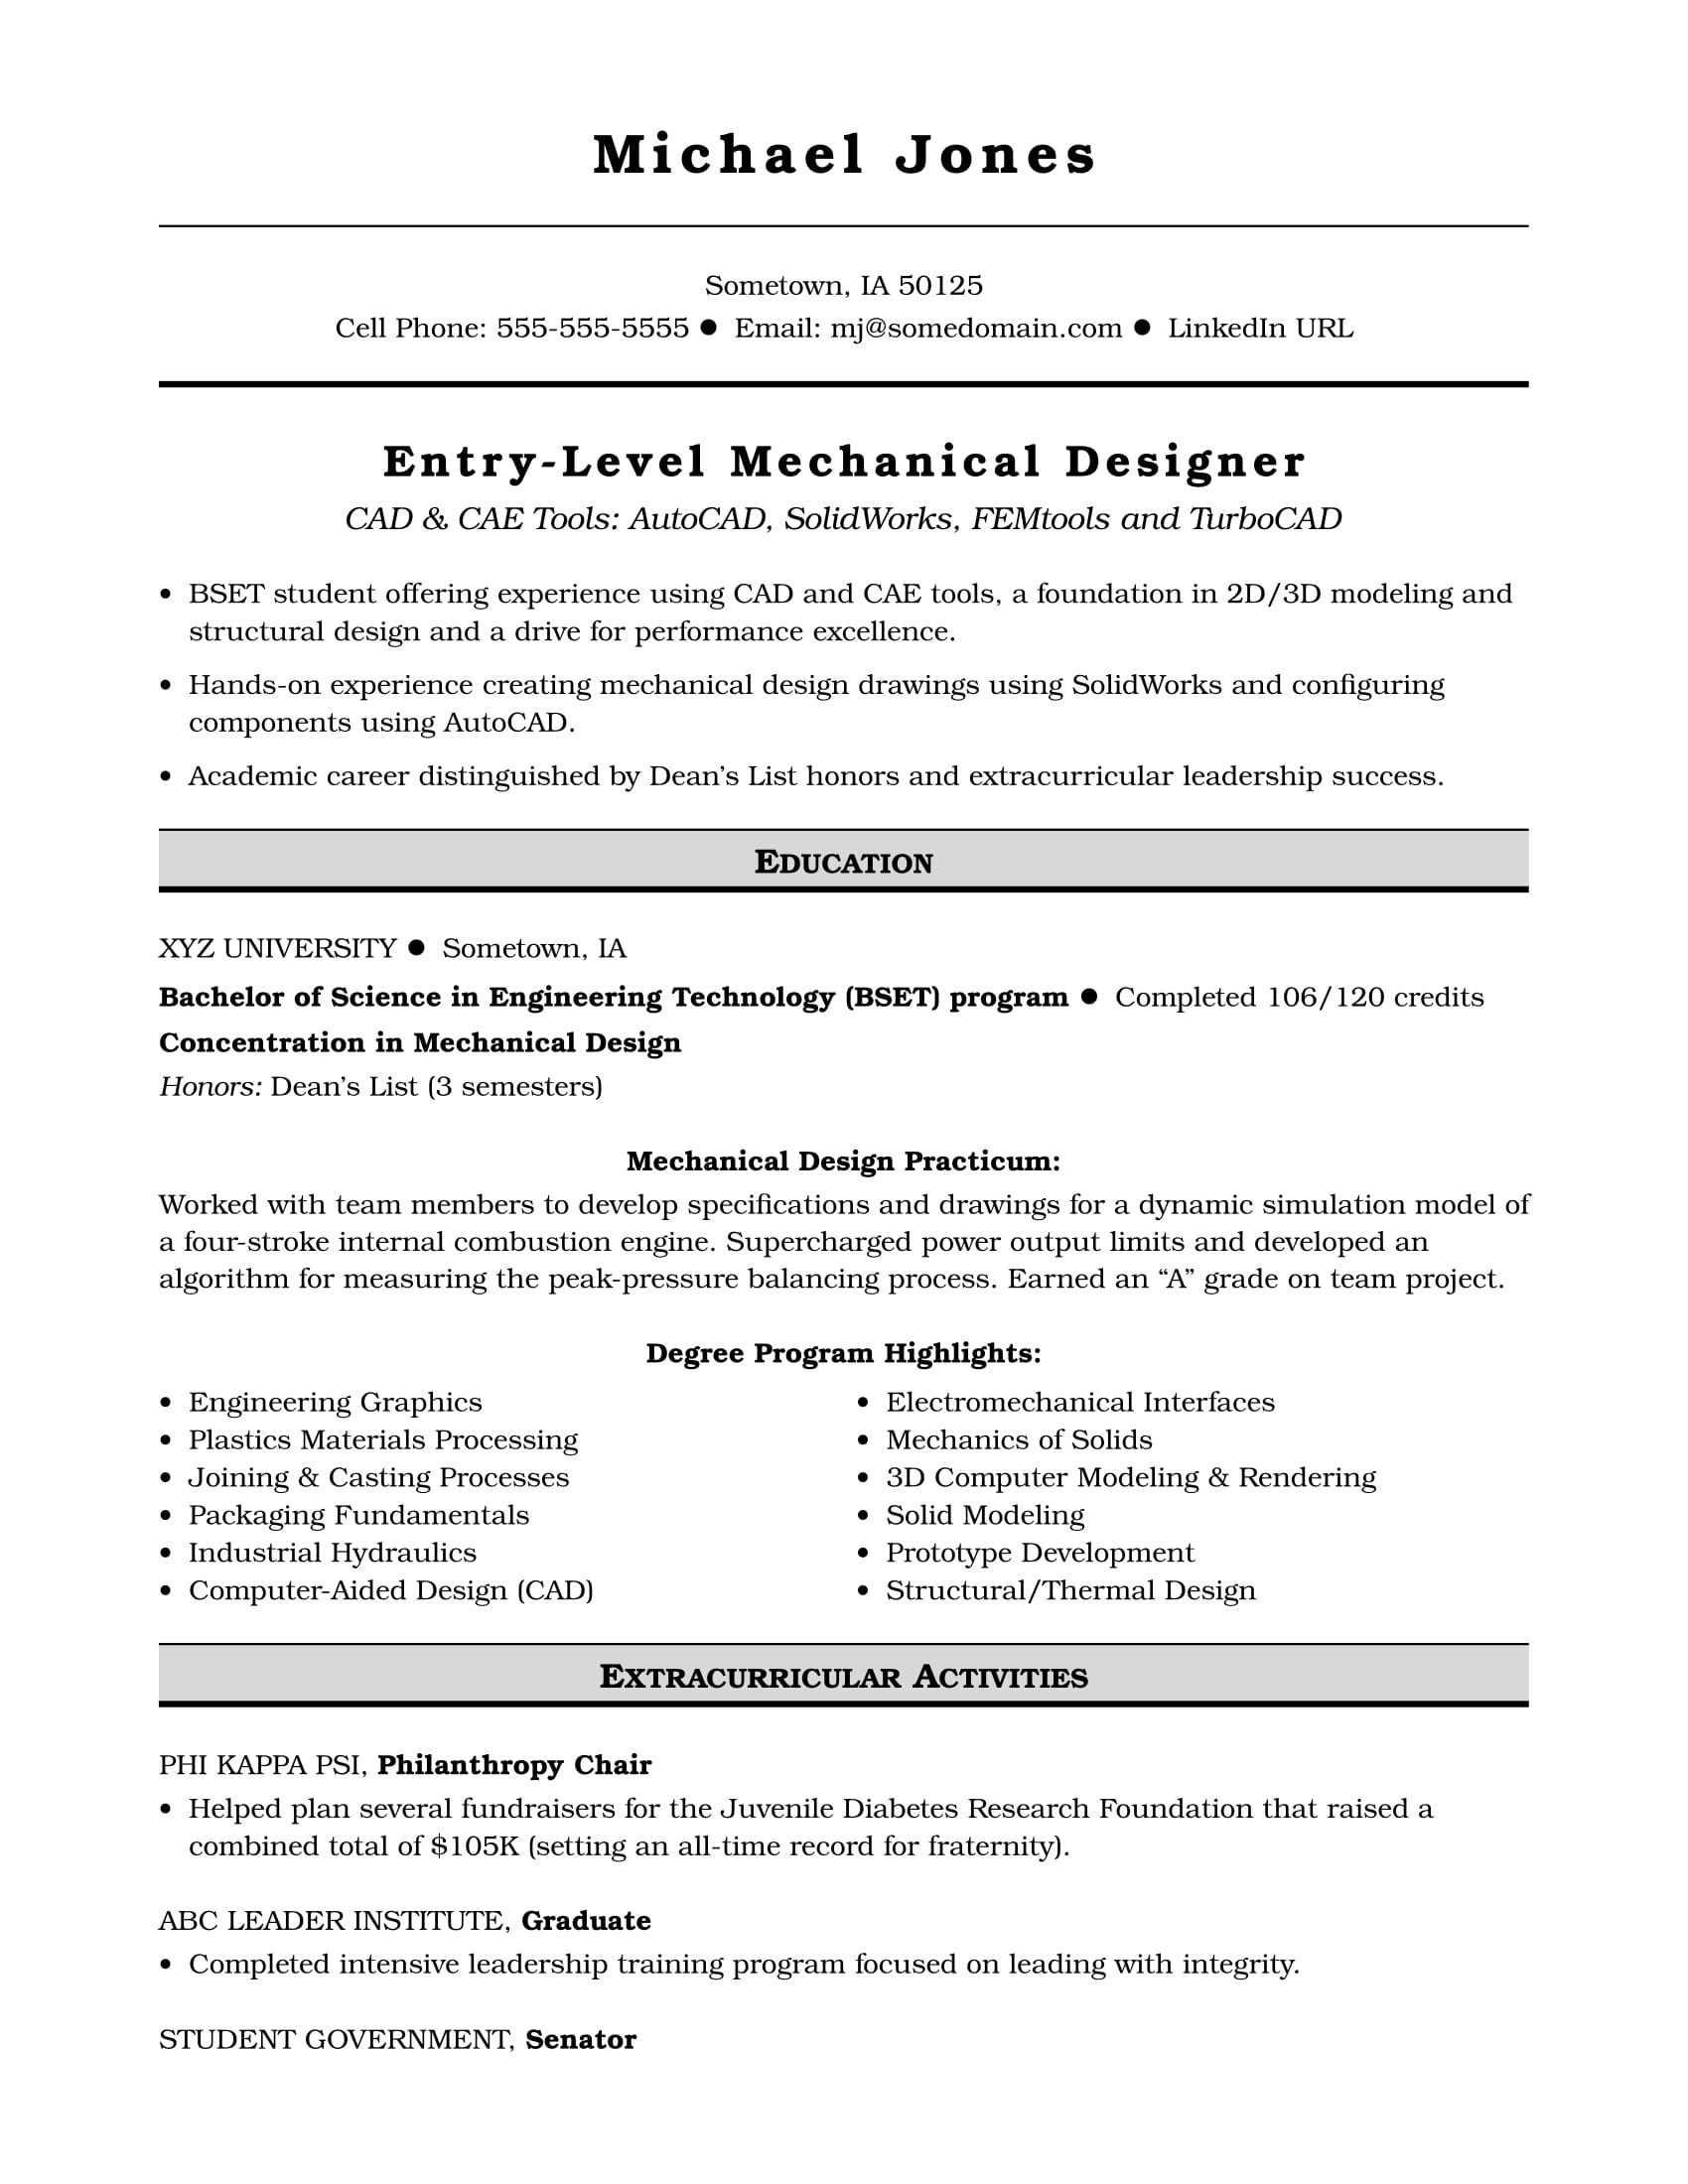 Sample Resume Entry Level Mechanical Engineer Sample Resume for An Entry-level Mechanical Designer Monster.com